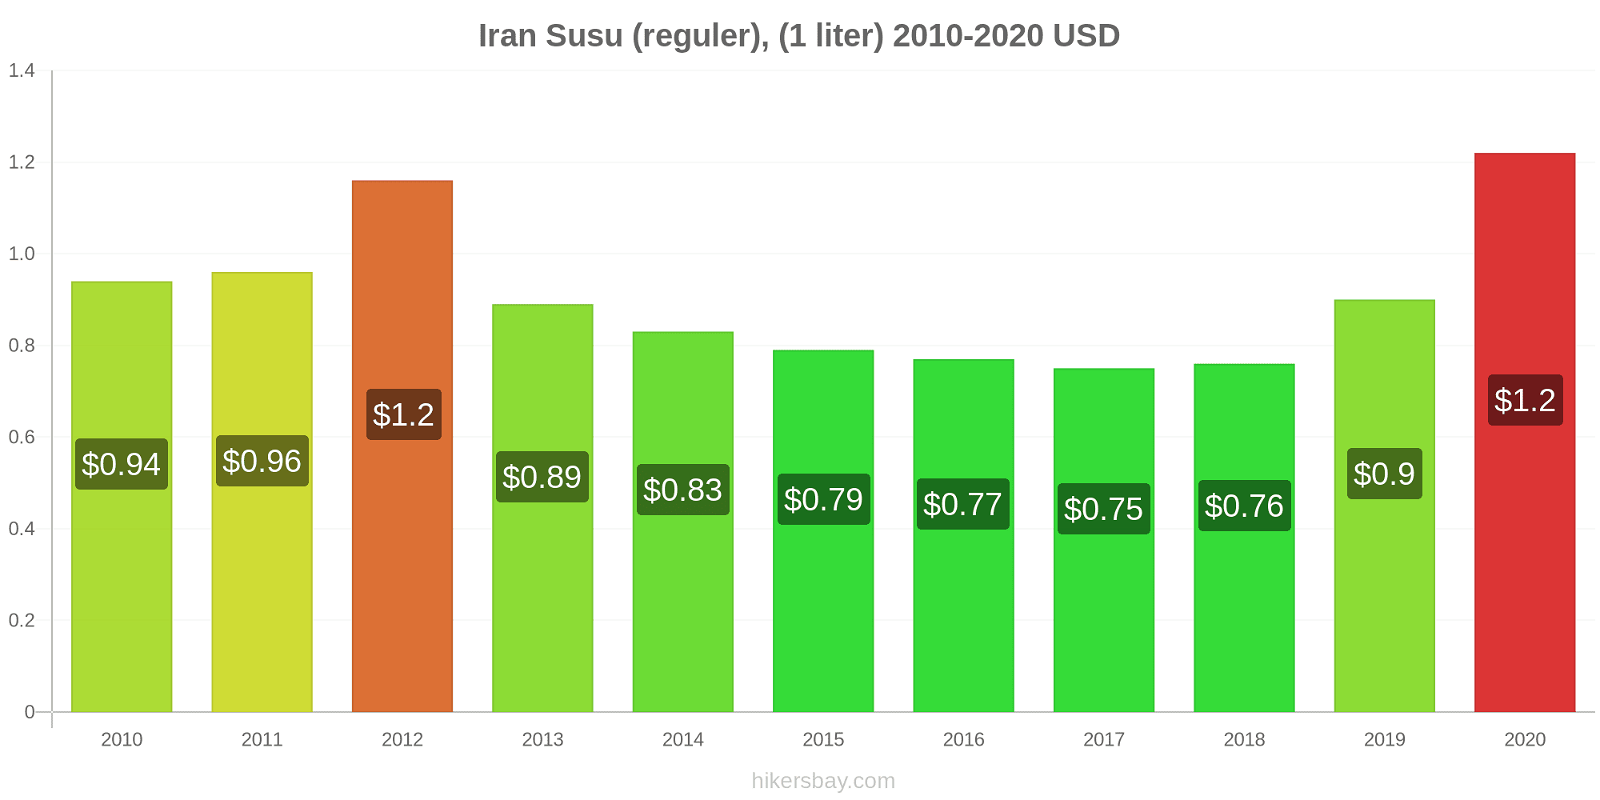 Iran perubahan harga Susu (reguler), (1 liter) hikersbay.com